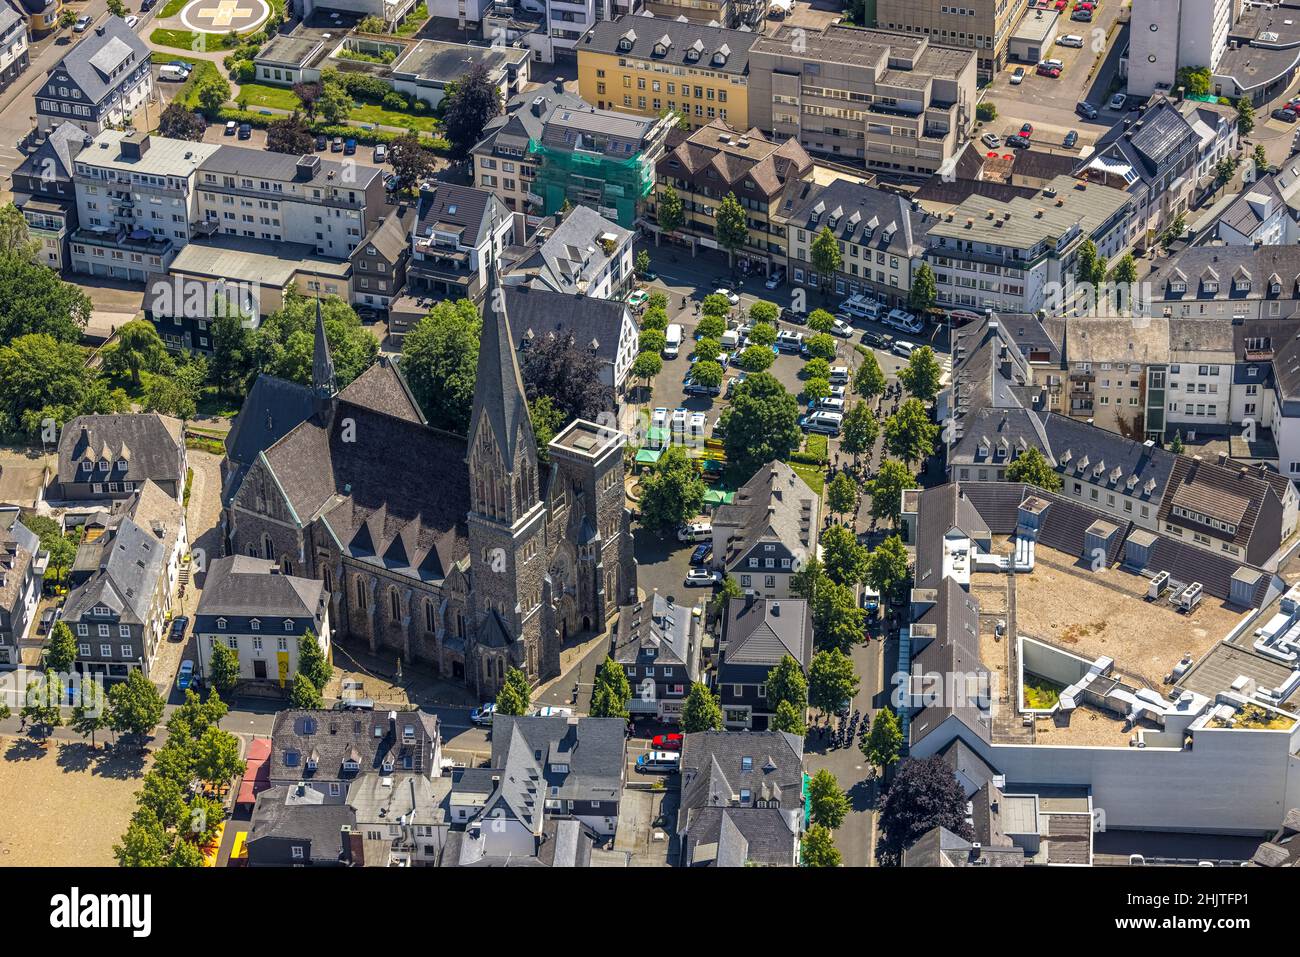 Veduta aerea, chiesa di San Martinus, operazioni di polizia a Kurkölner Platz, Olpe, Olpe, Sauerland, Renania settentrionale-Vestfalia, Germania, luogo di culto, Foto Stock